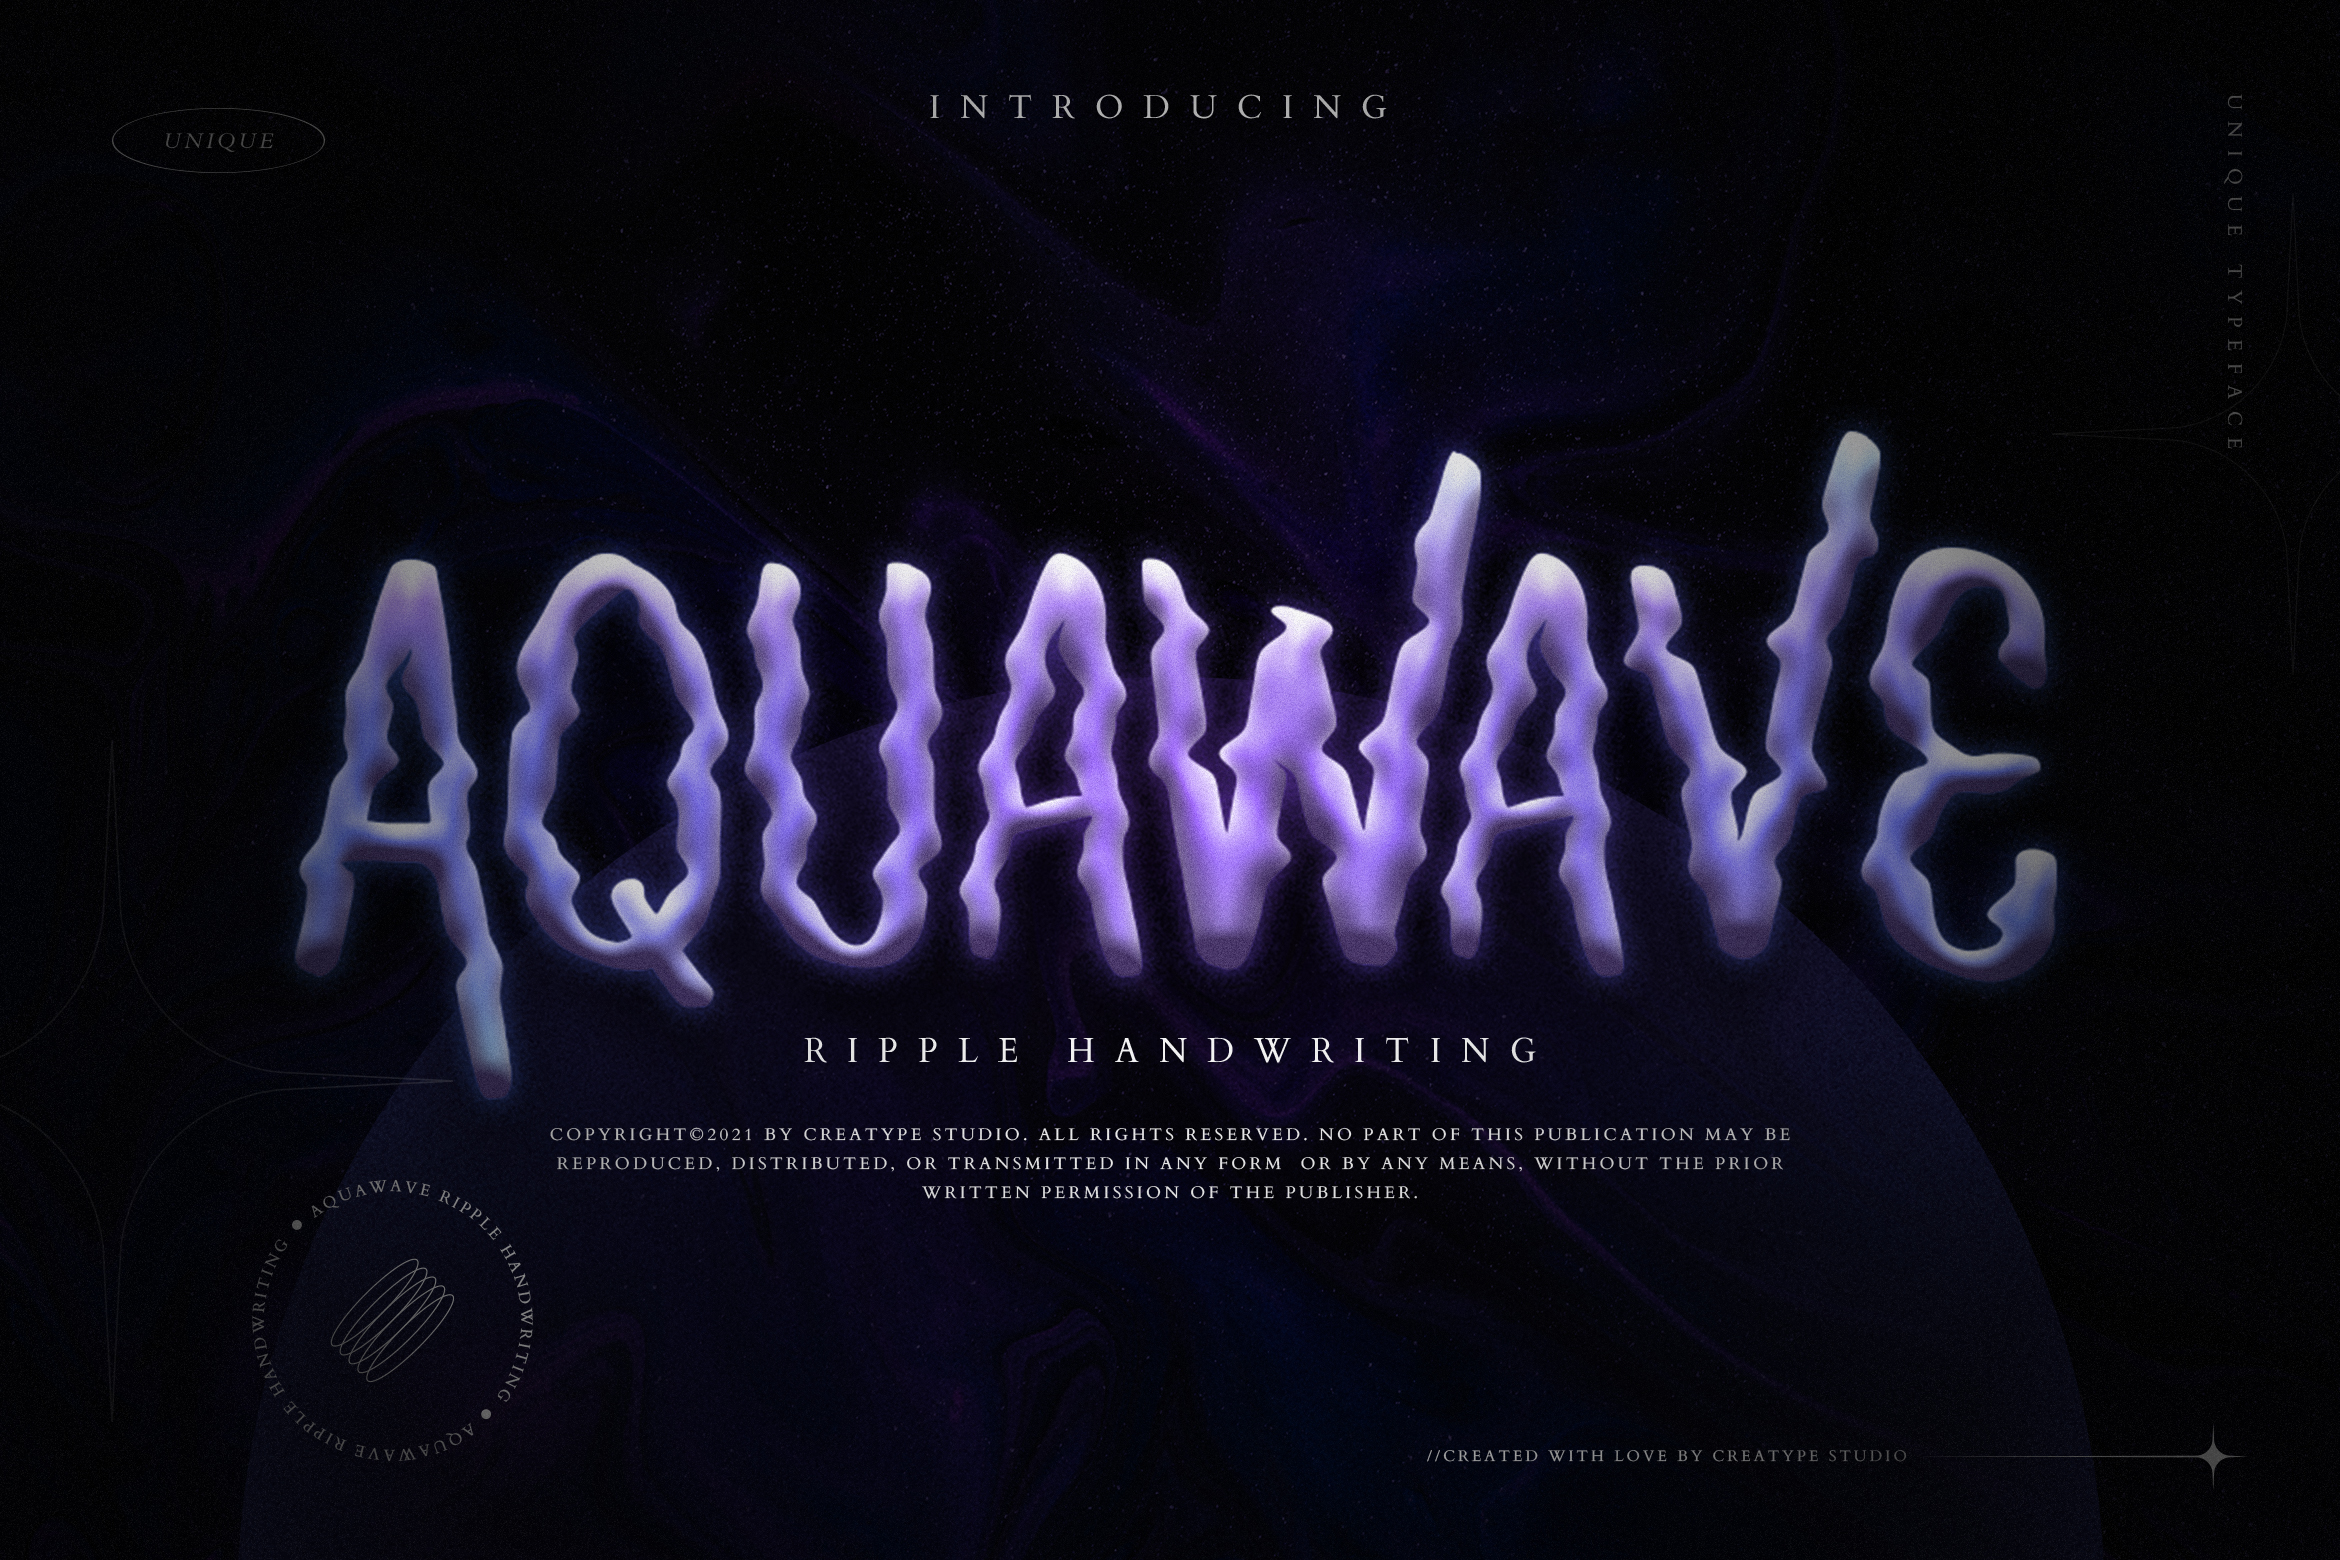 Aquawave Regular